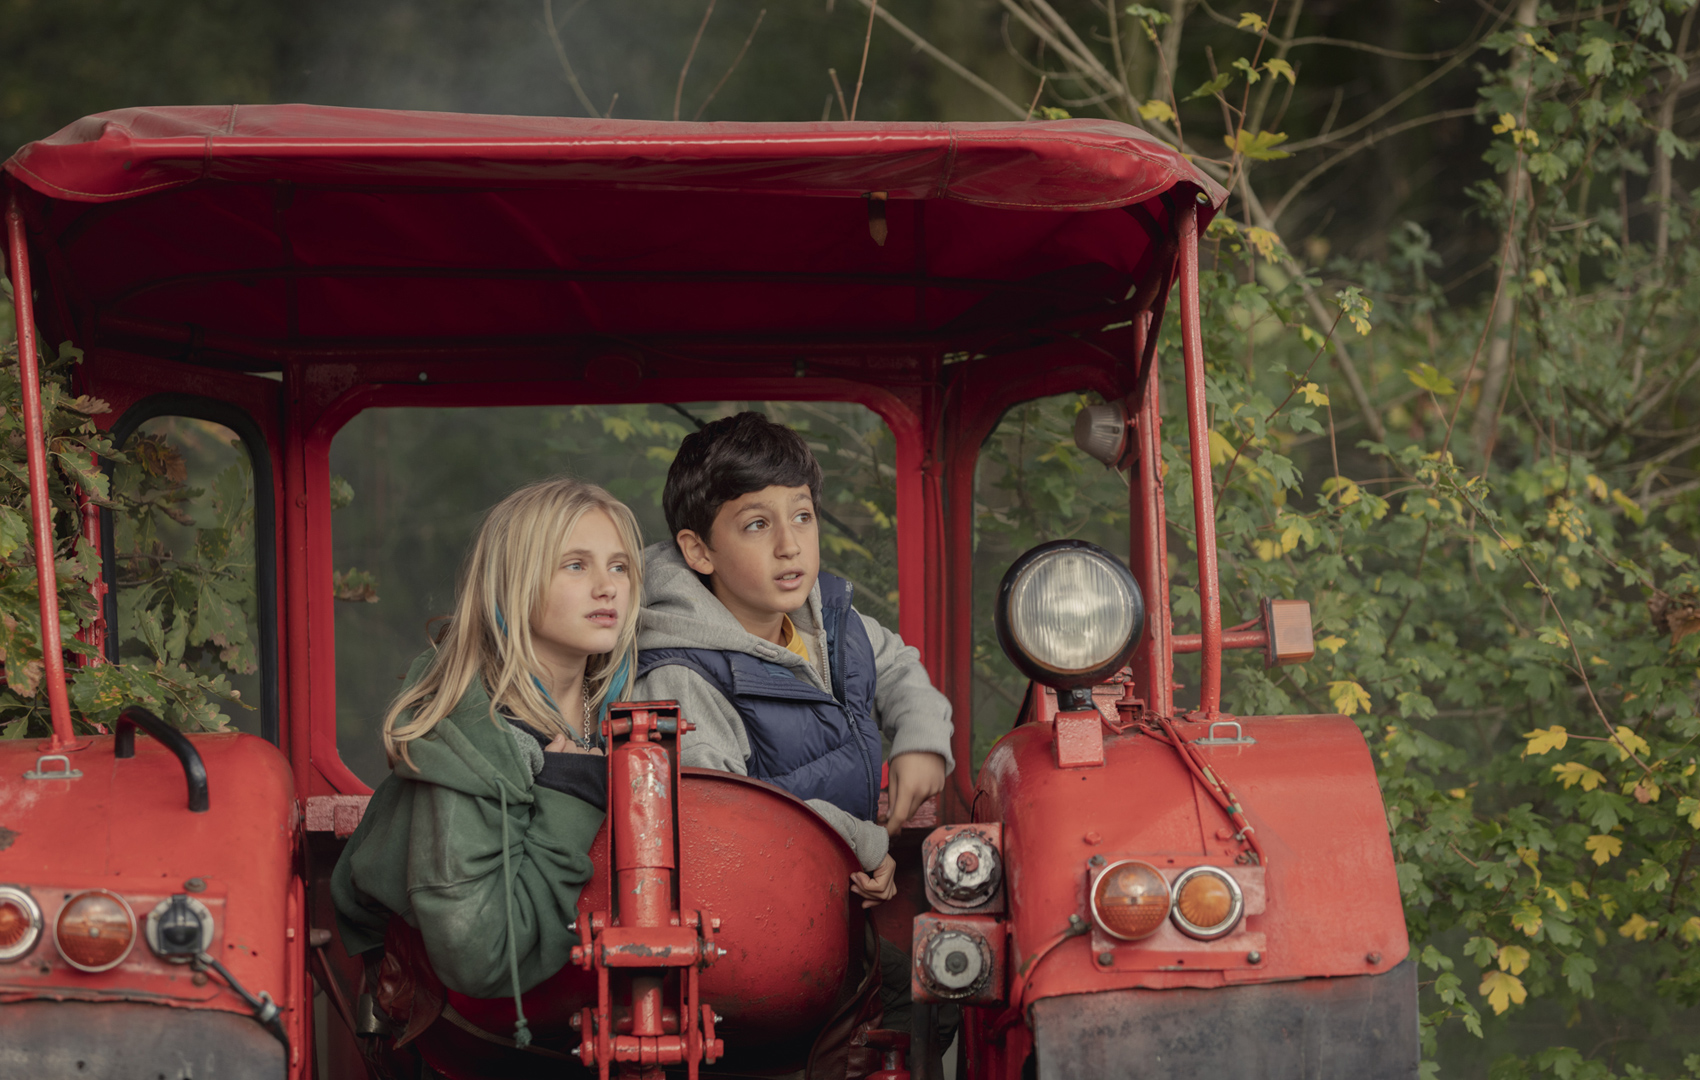 Ein Mädchen und ein Junge sitzen in einem alten roten Traktor vor einem buschigen Wald. Sie schauen aus dem Bild hinaus.